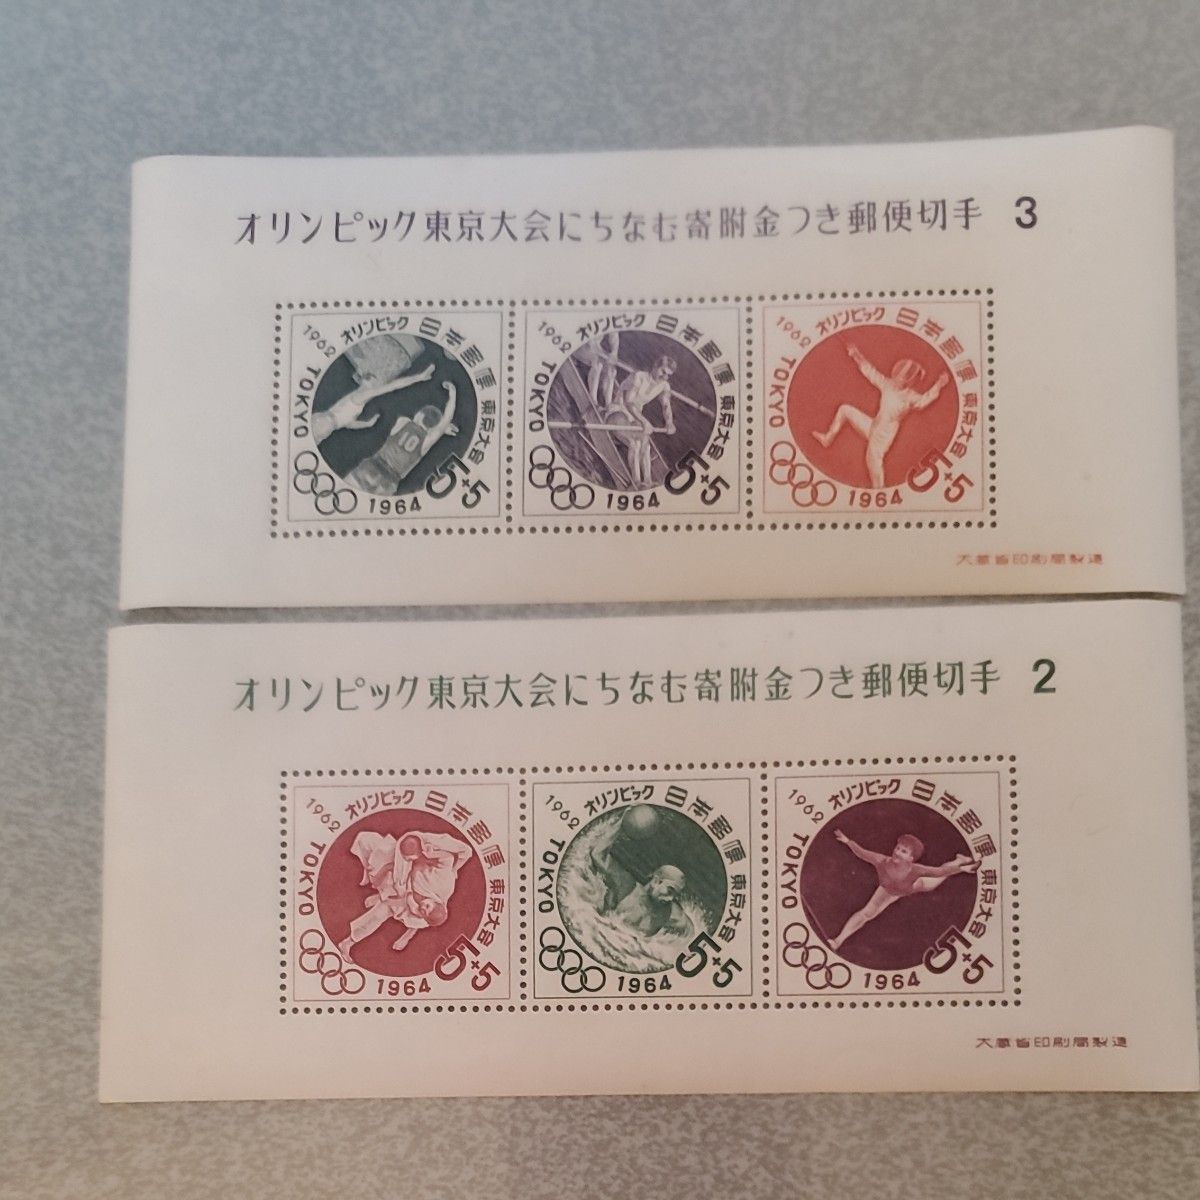 オリンピック東京大会にちなむ寄附金つき郵便切手2、3  記念切手